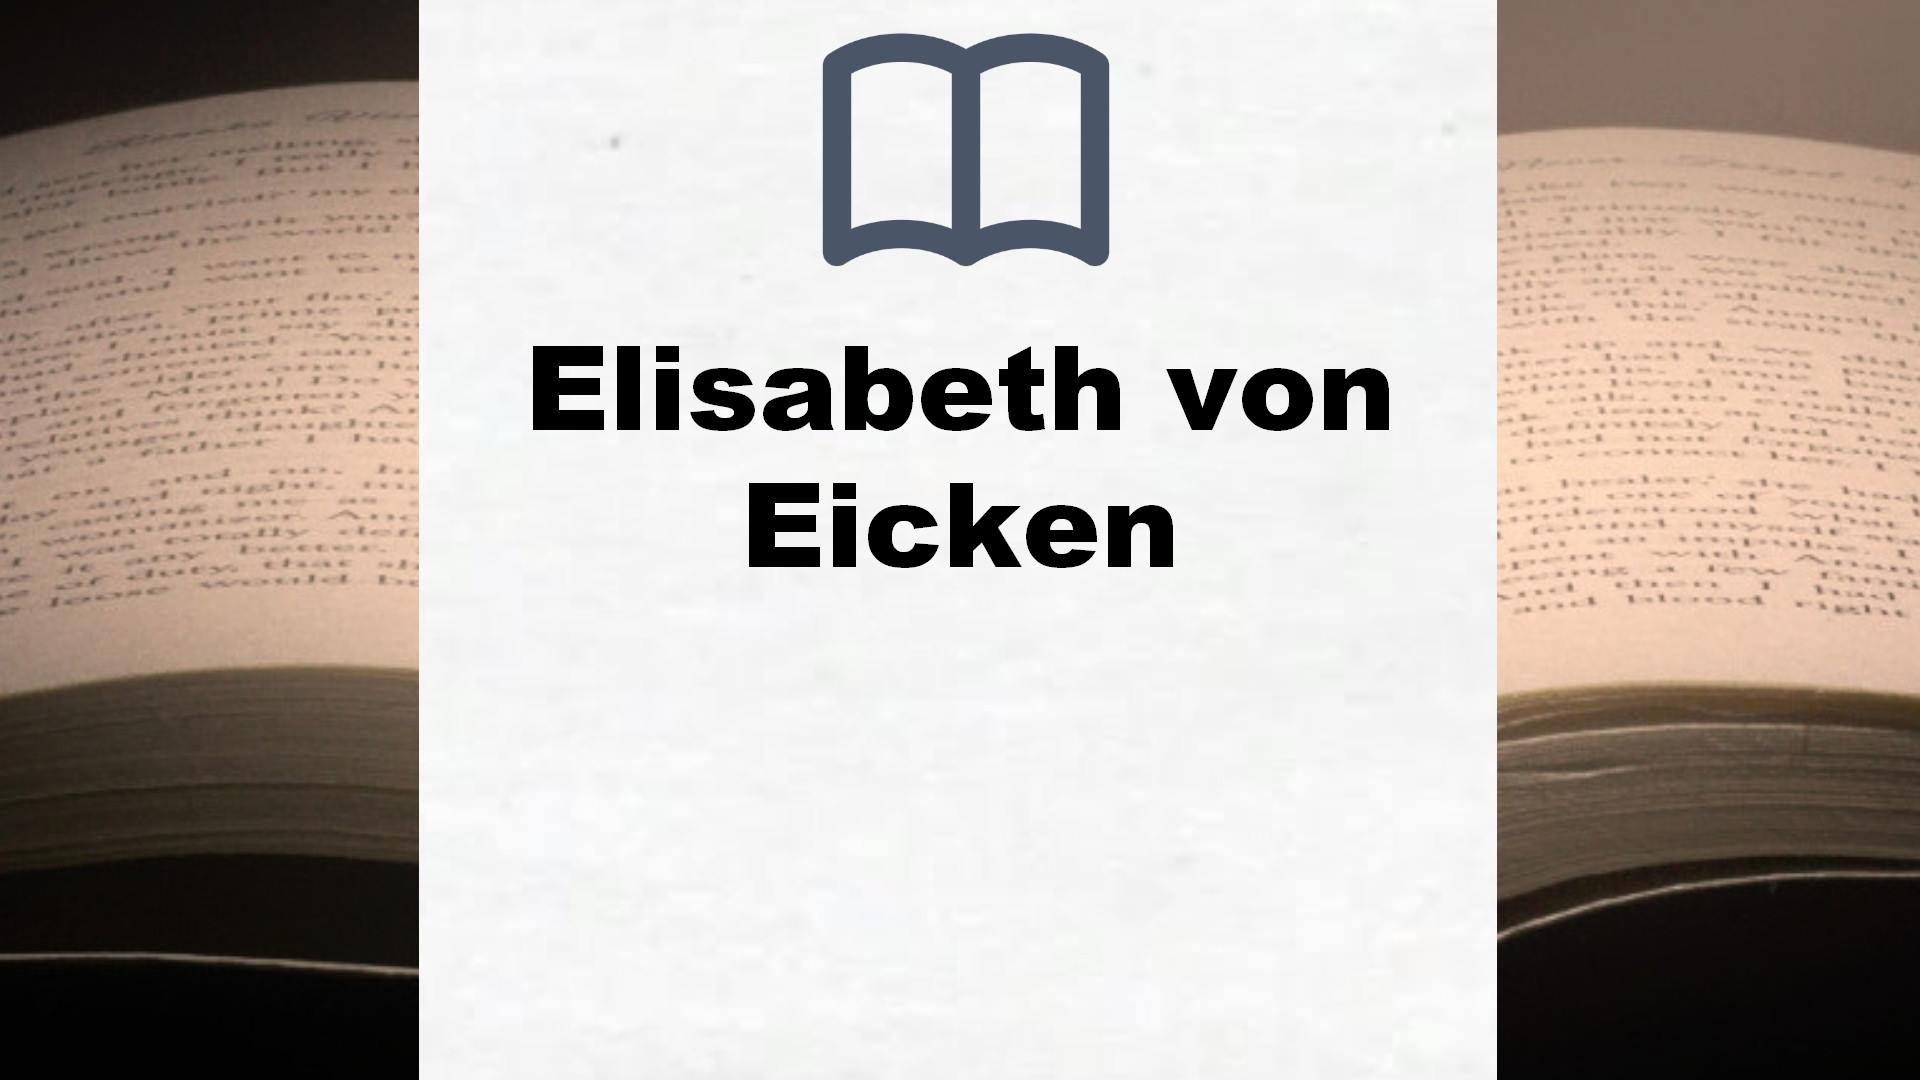 Bücher über Elisabeth von Eicken